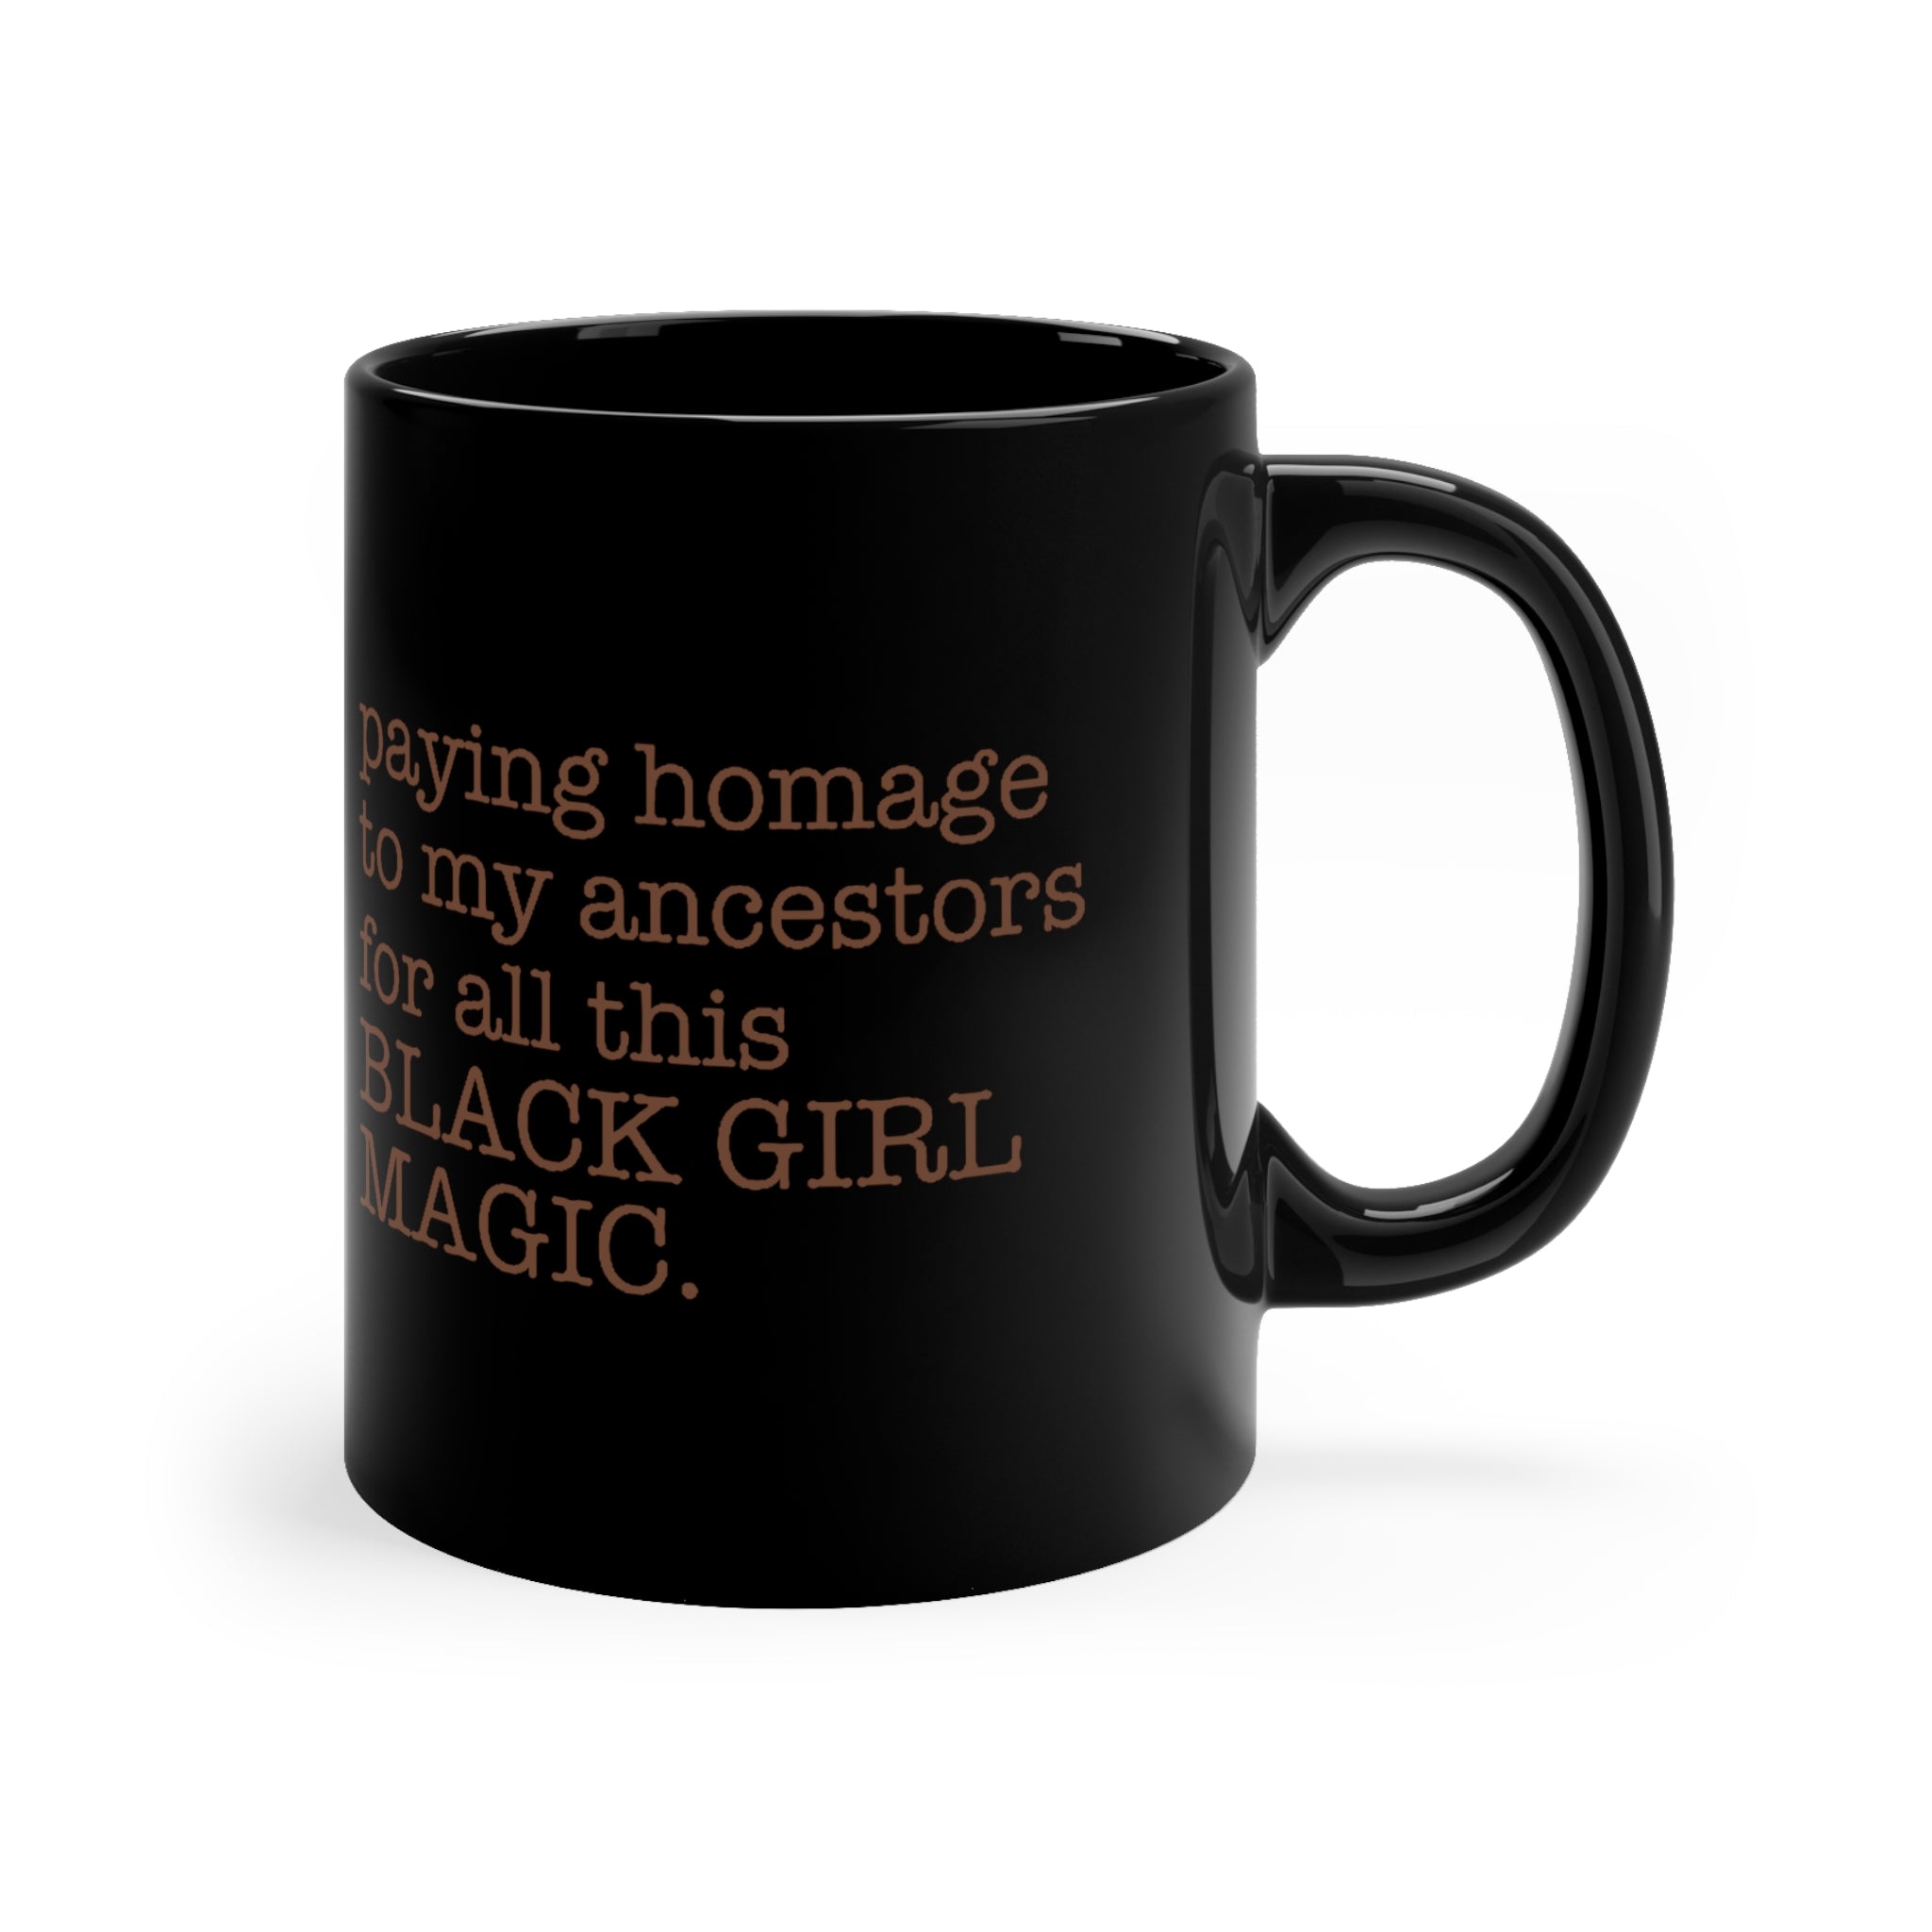 Black Girl Magic Mug 11oz